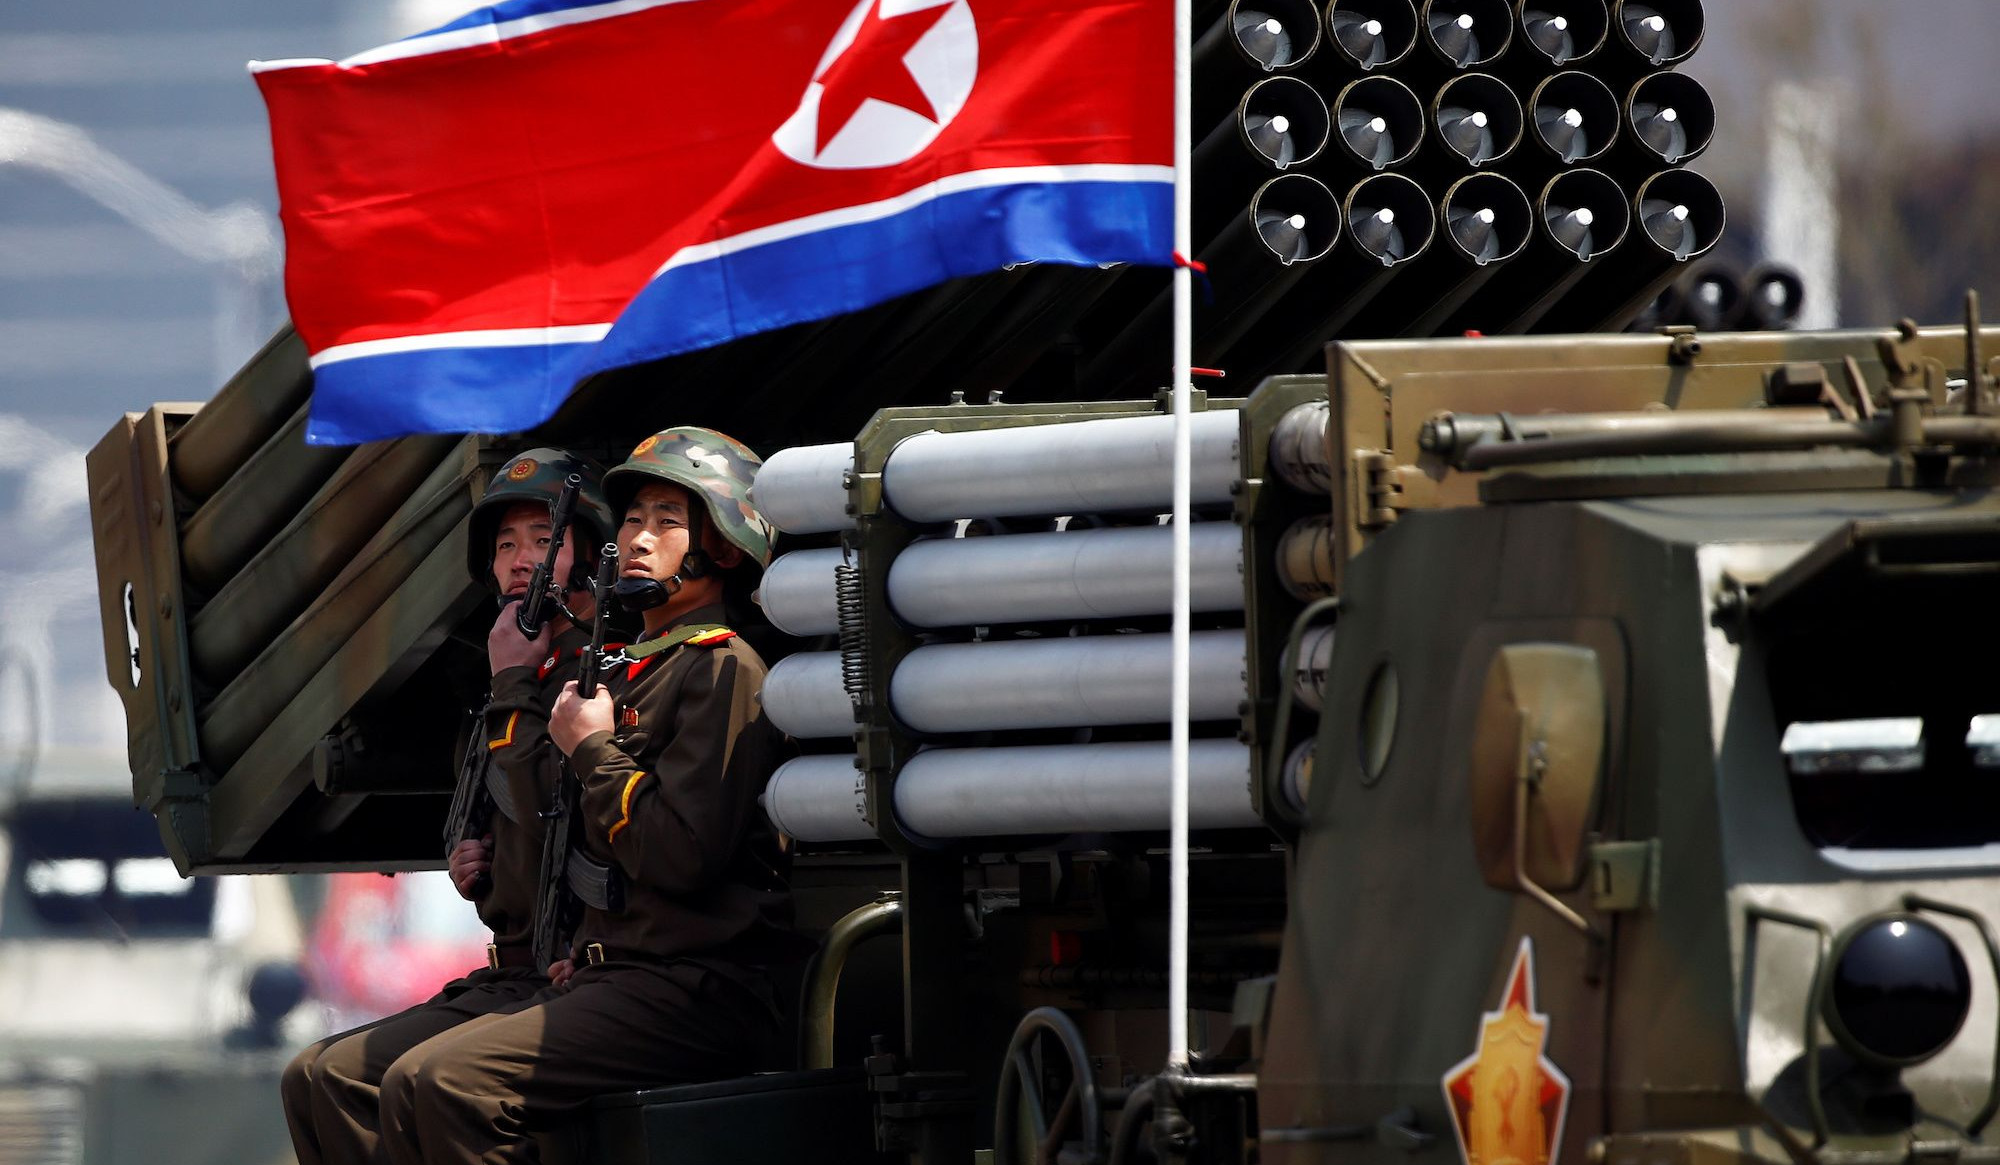 ԿԺԴՀ-ի հրթիռային արձակումները կապված են ԱՄՆ-ի և Հարավային Կորեայի զորավարժությունների հետ. ՄԱԿ-ում Չինաստանի ներկայացուցիչ